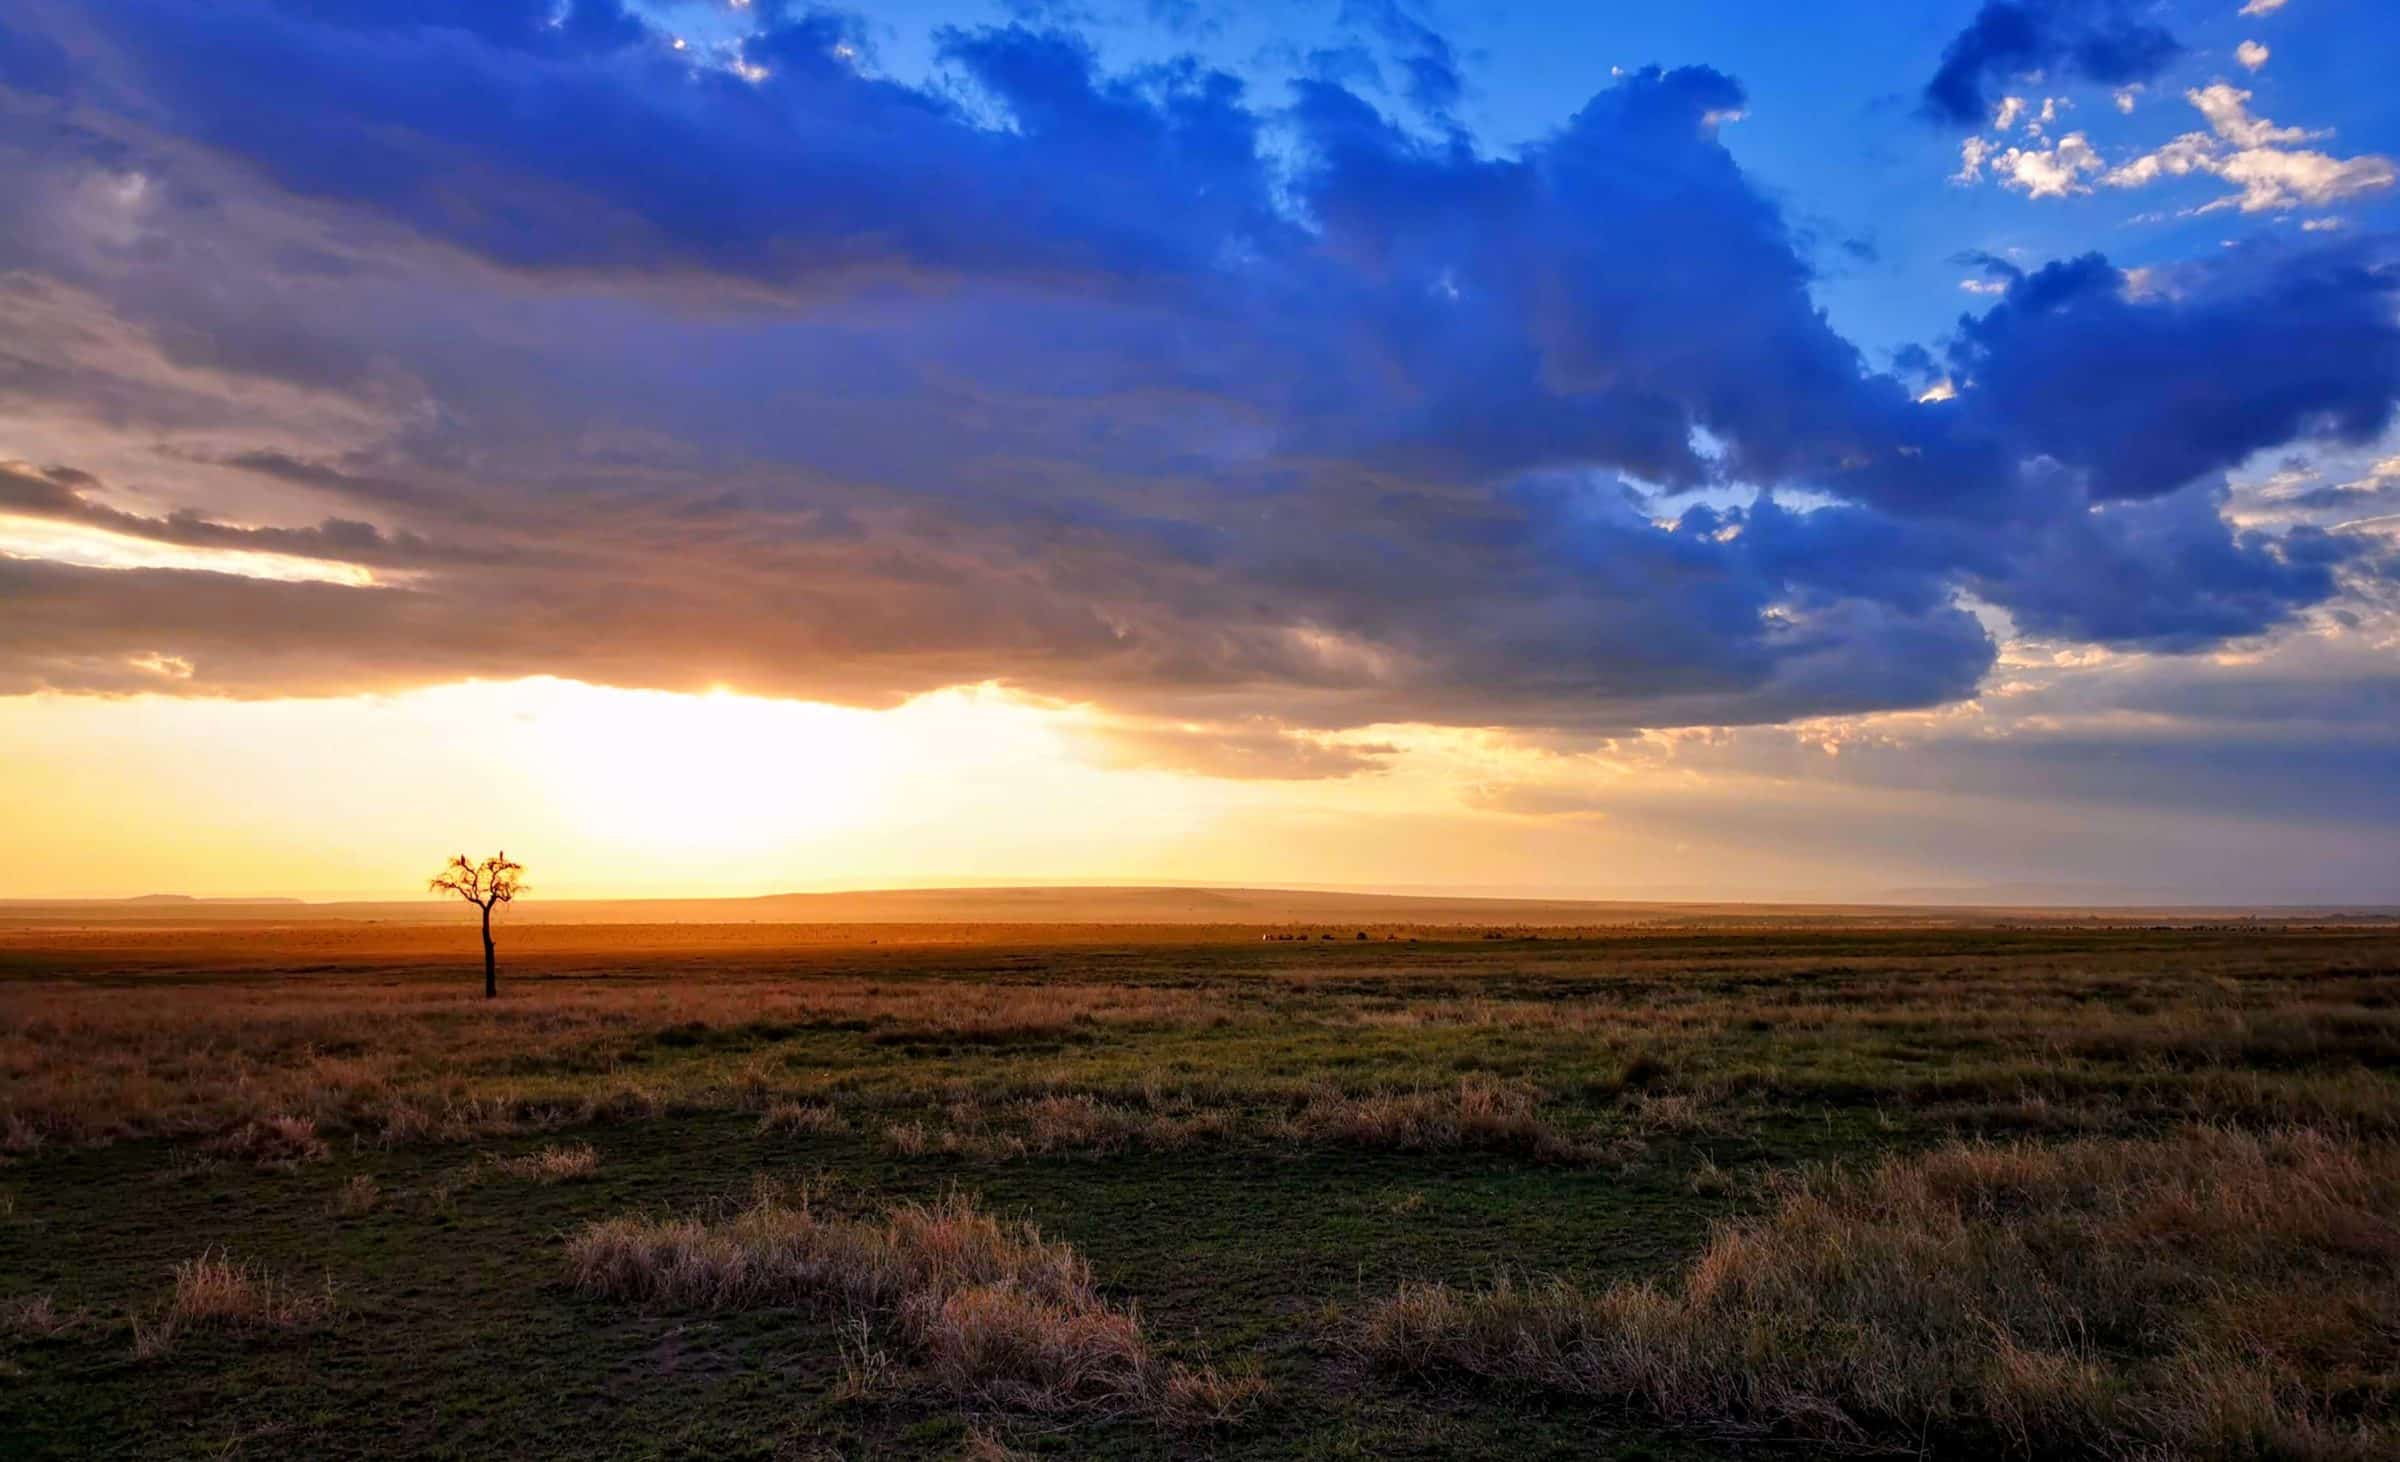 Große Wolken, streunende Bäume und einige Tiere im Hintergrund. Ein weiterer Tag in der Masai Mara